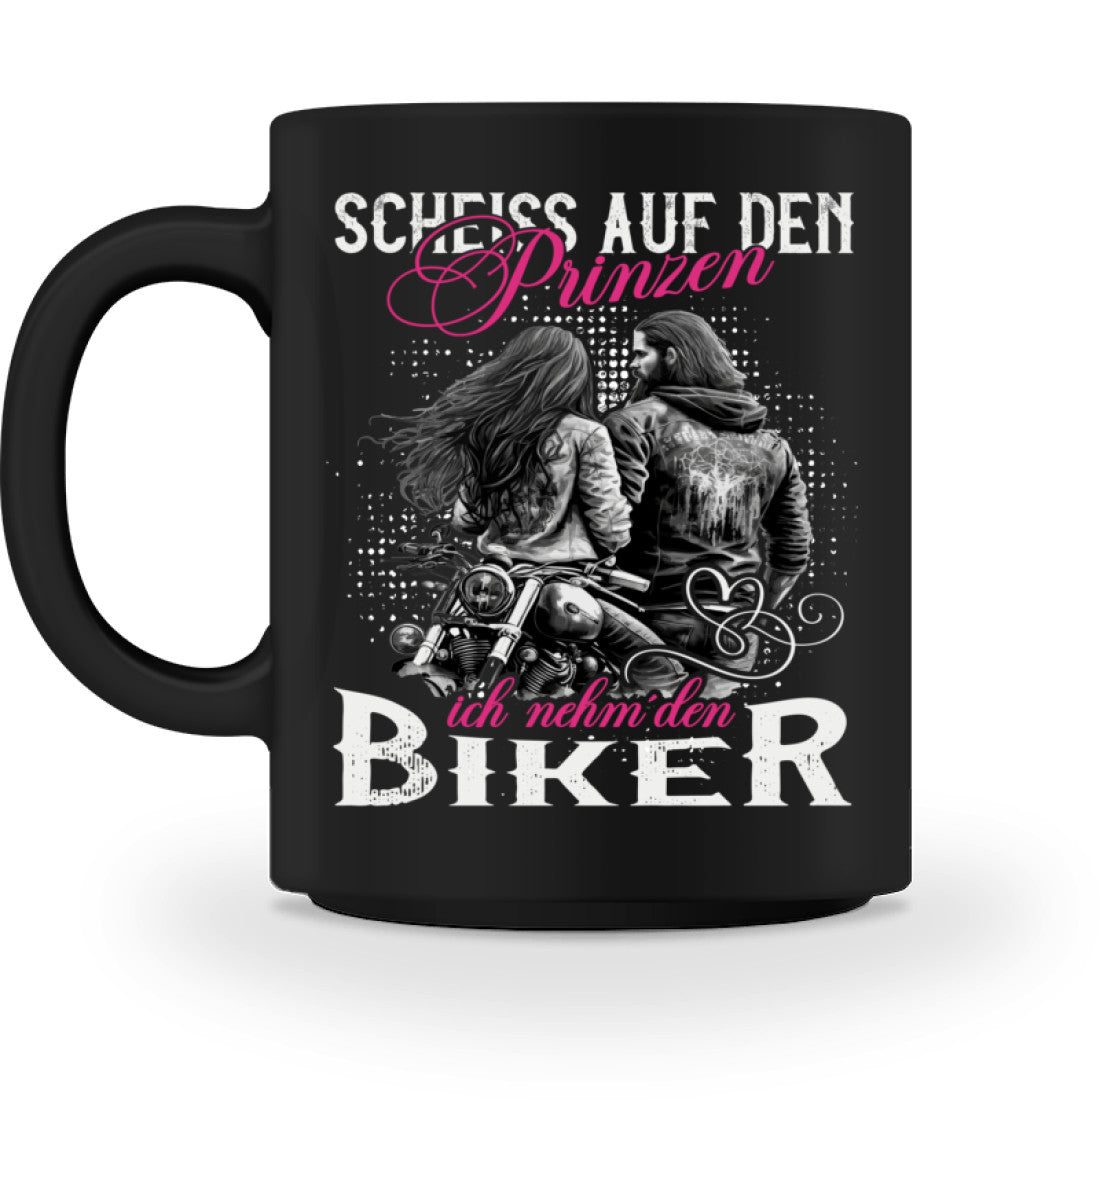 Eine Tasse für Motorradfahrerinnen von Wingbikers, mit dem beidseitigen Aufdruck, Scheiß auf den Prinzen, ich nehm' den Biker, in schwarz.